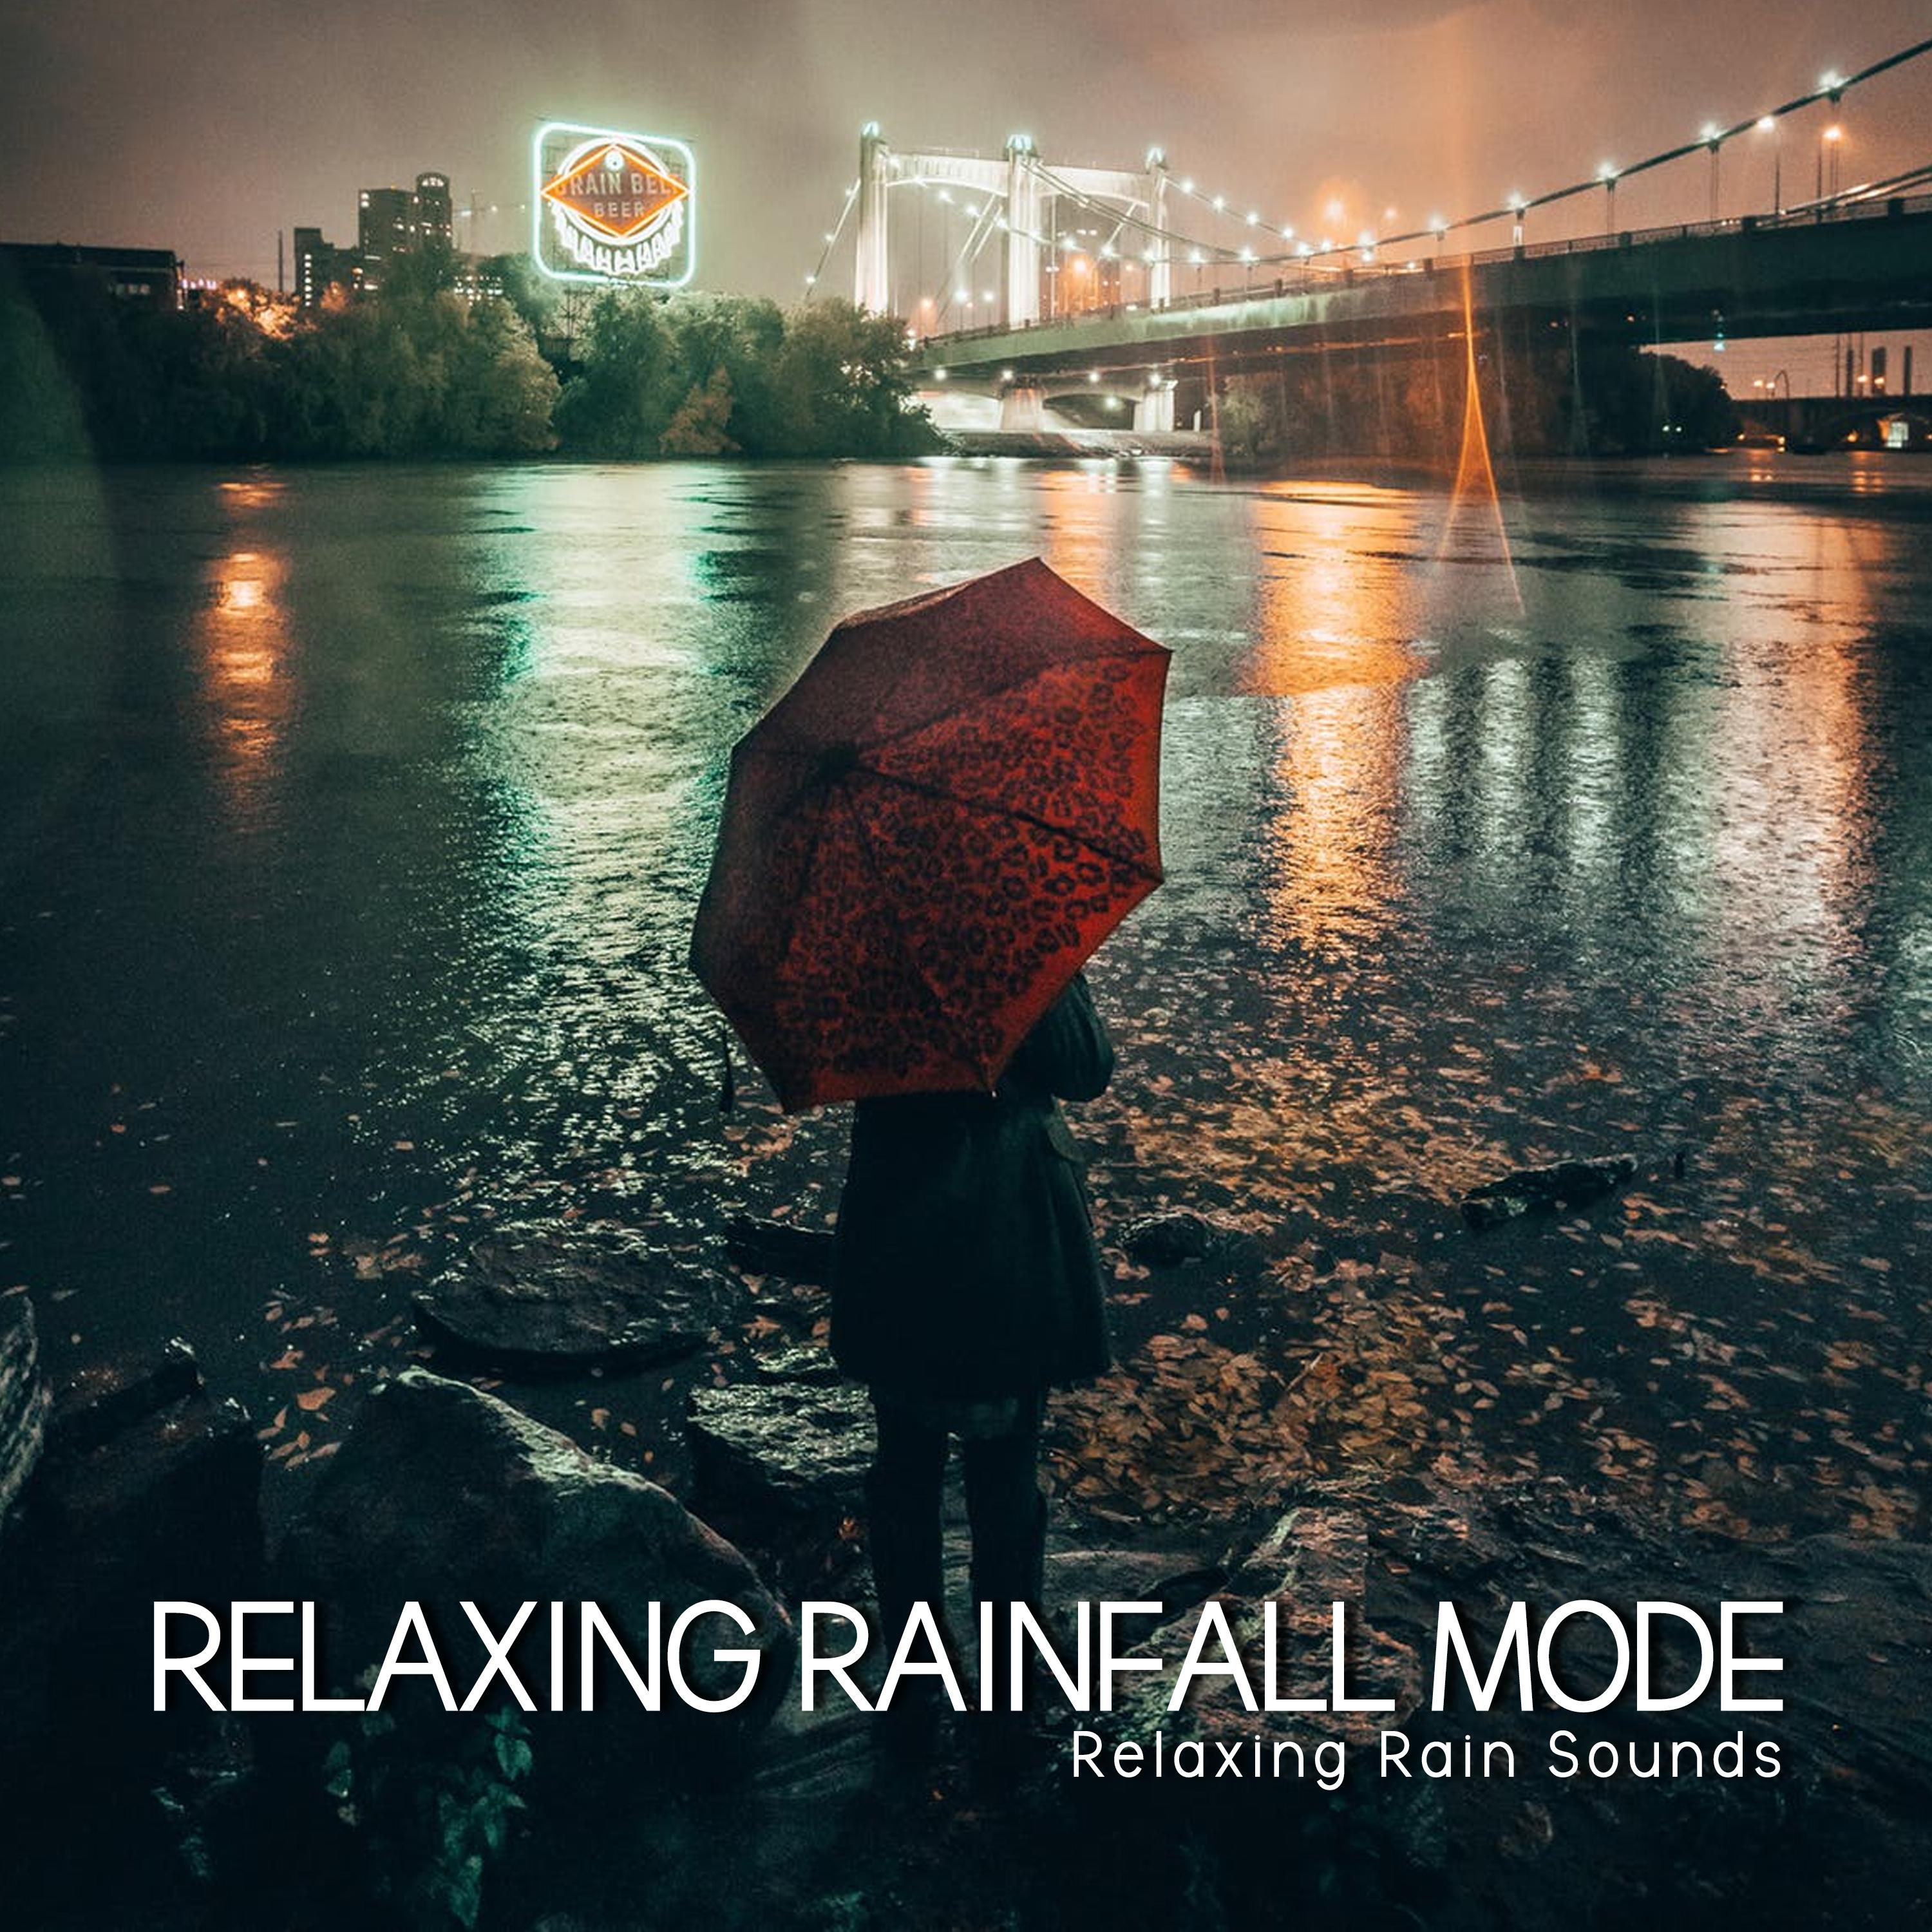 Relaxing Rainfall Mode